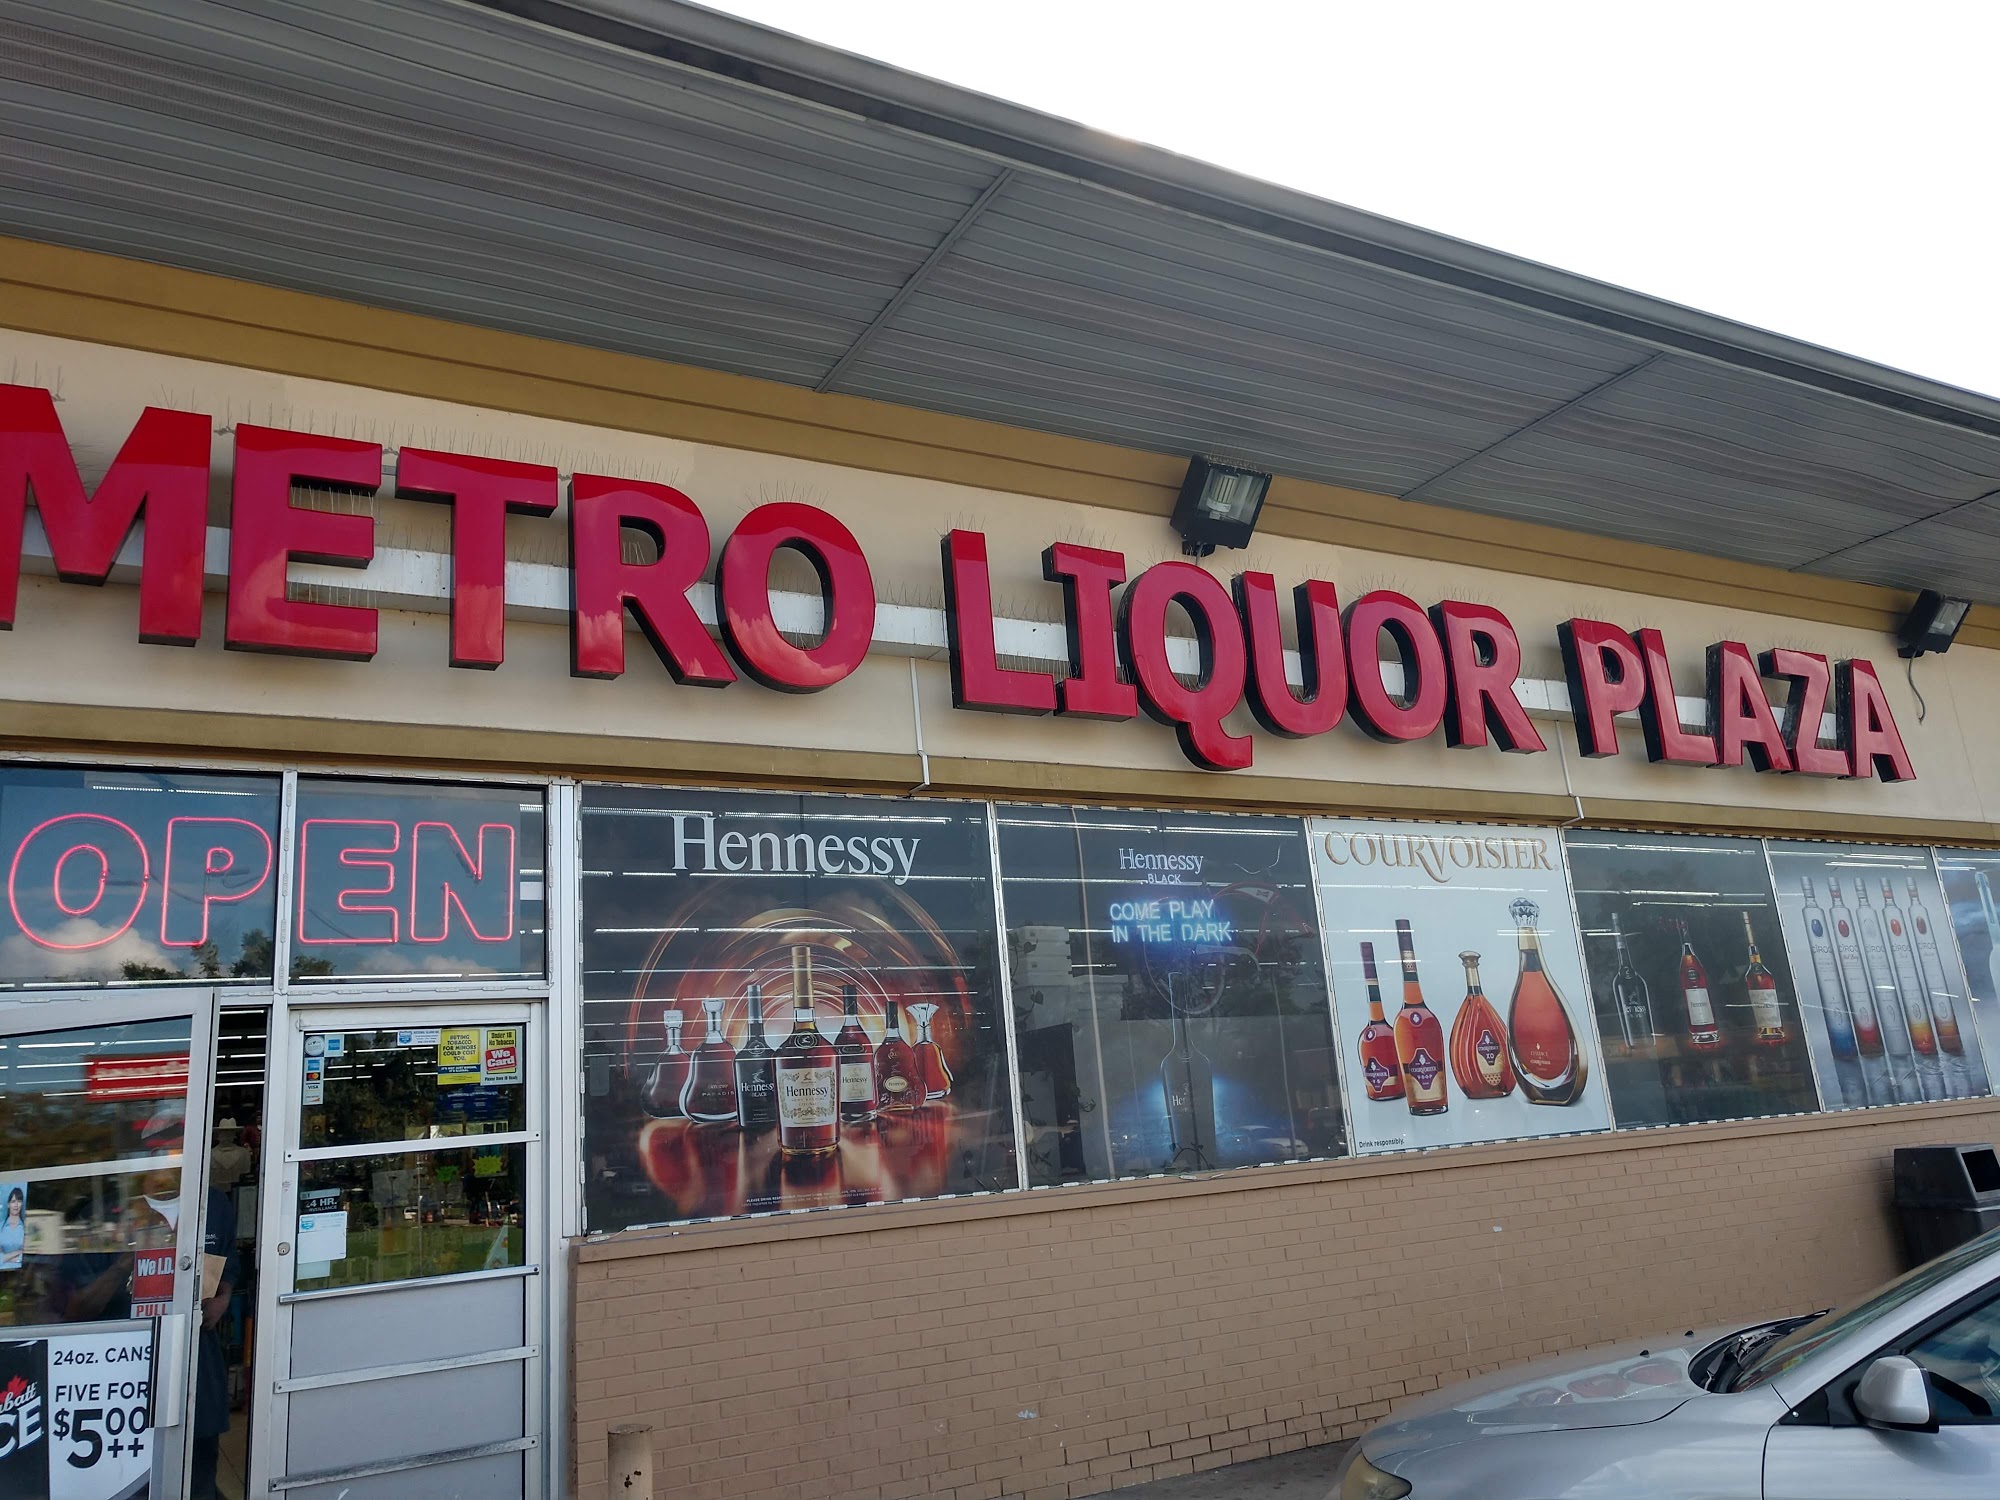 Metro Liquor Plaza